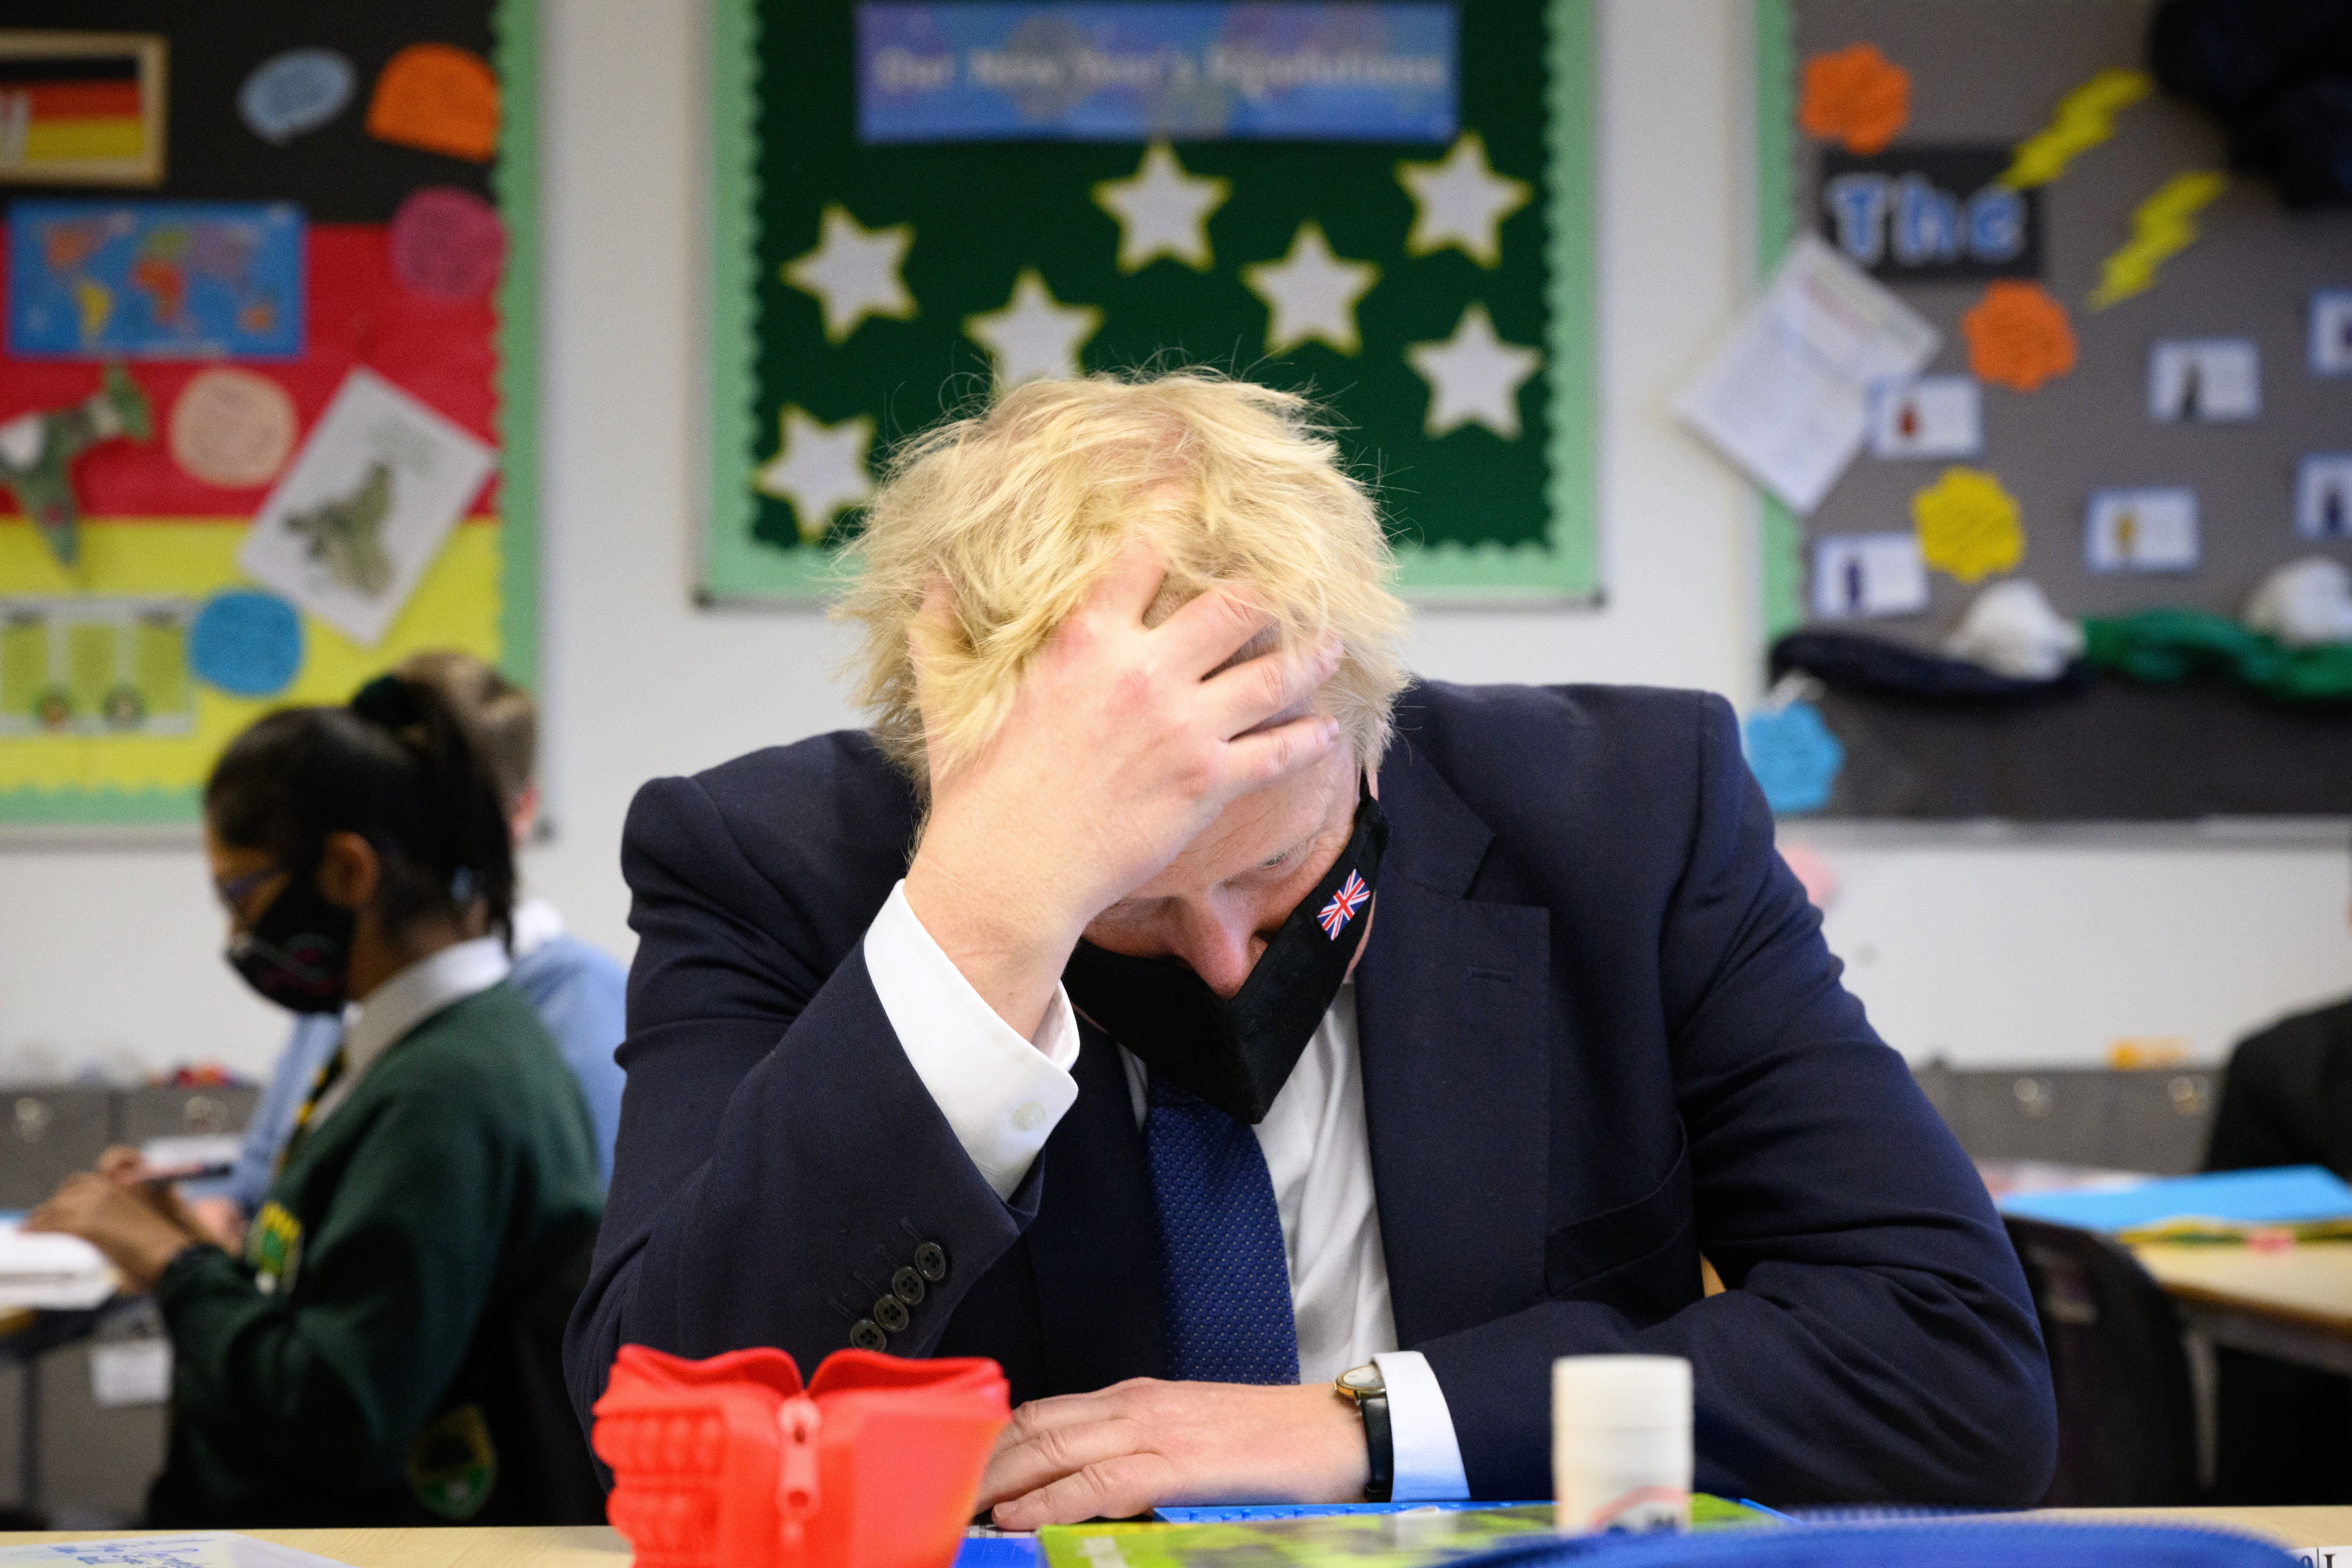 How long before Boris himself gets his collar felt?